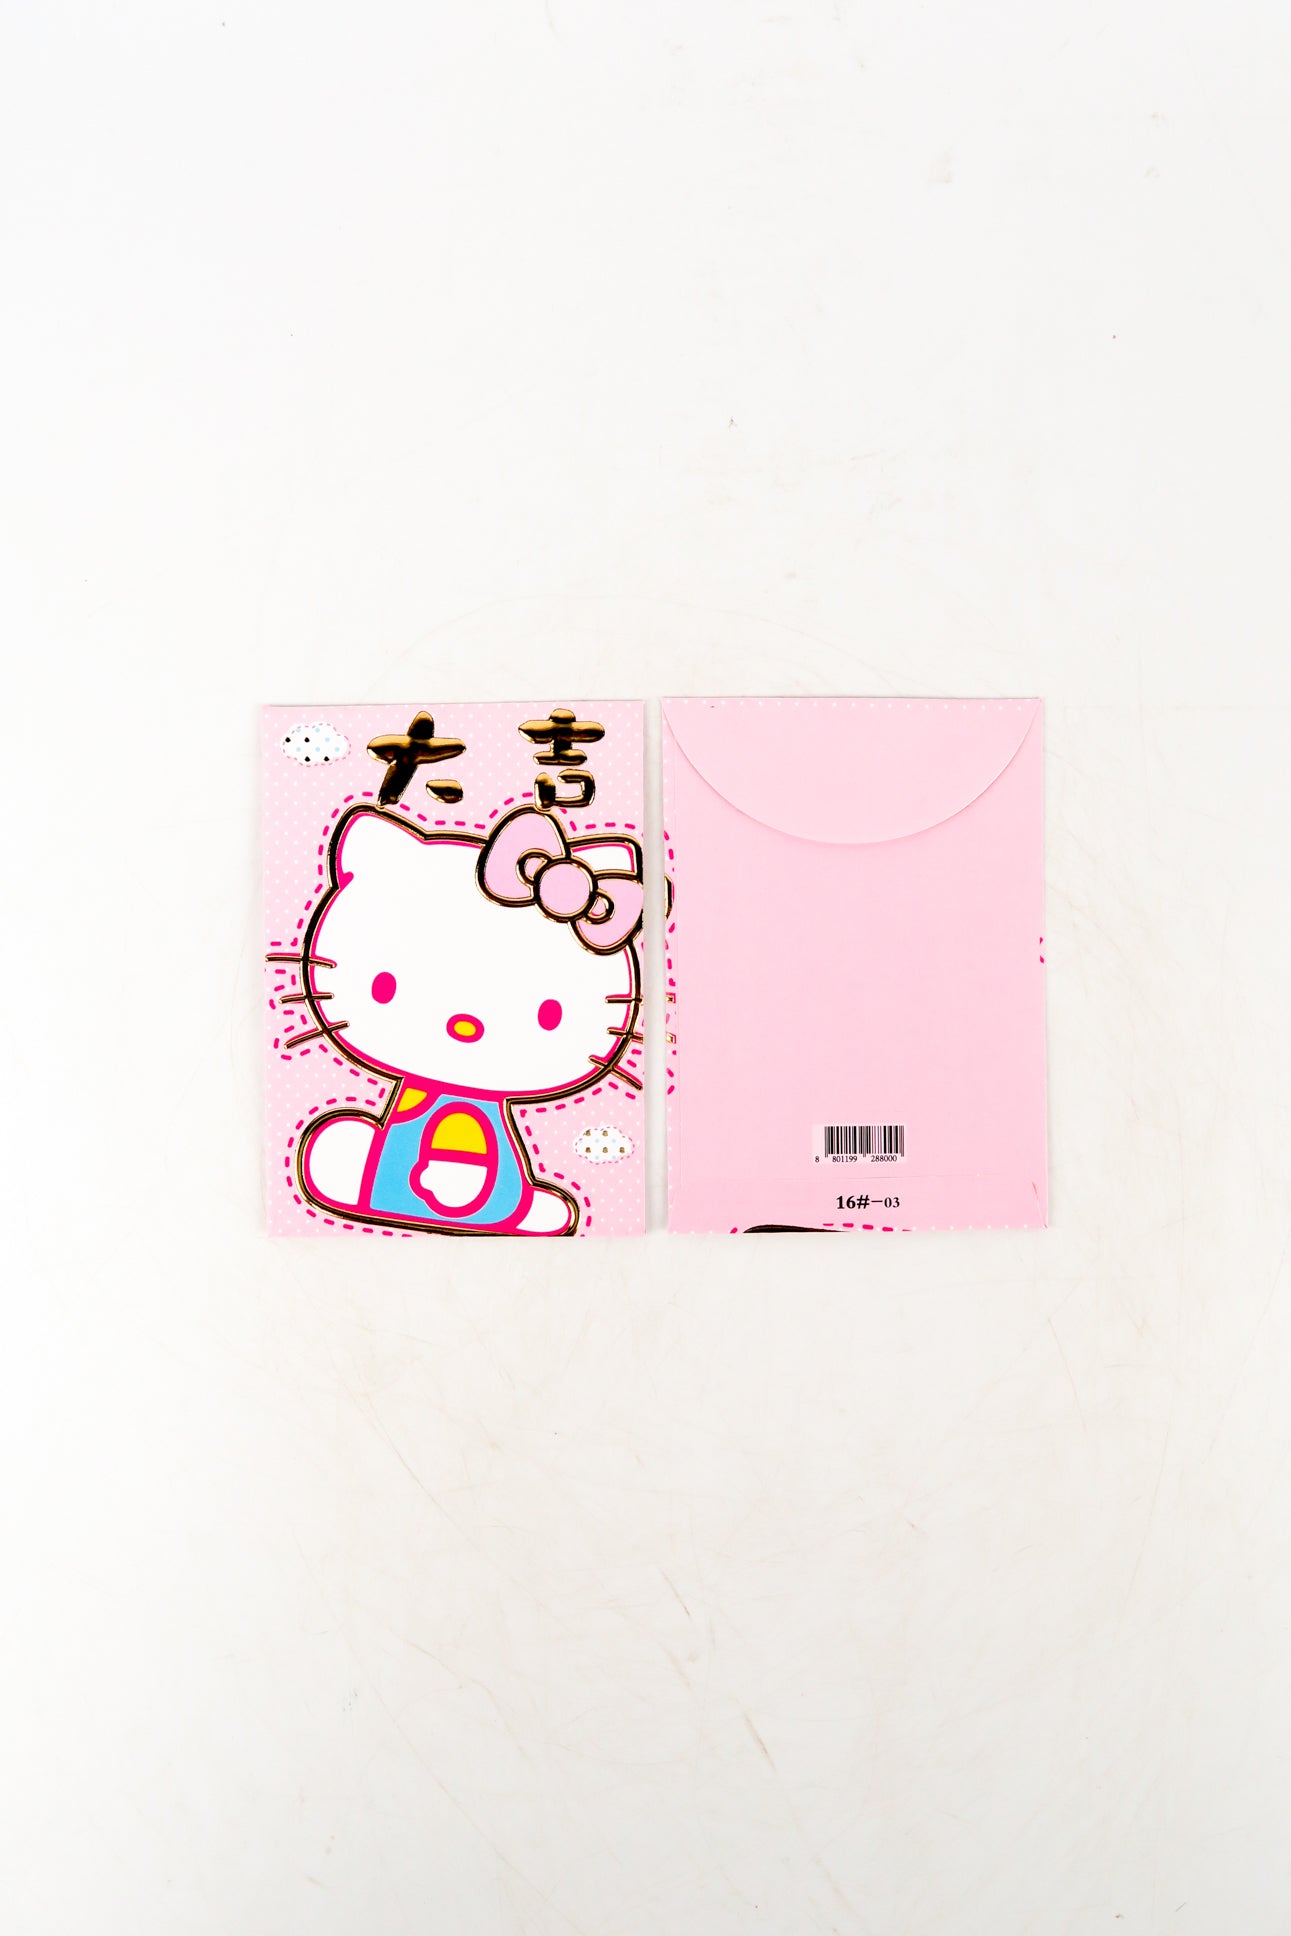 ซองอั่งเปา ซองมงคล ซองตรุษจีน ซองแดง - Chinese New Year Red Envelopes No.5224